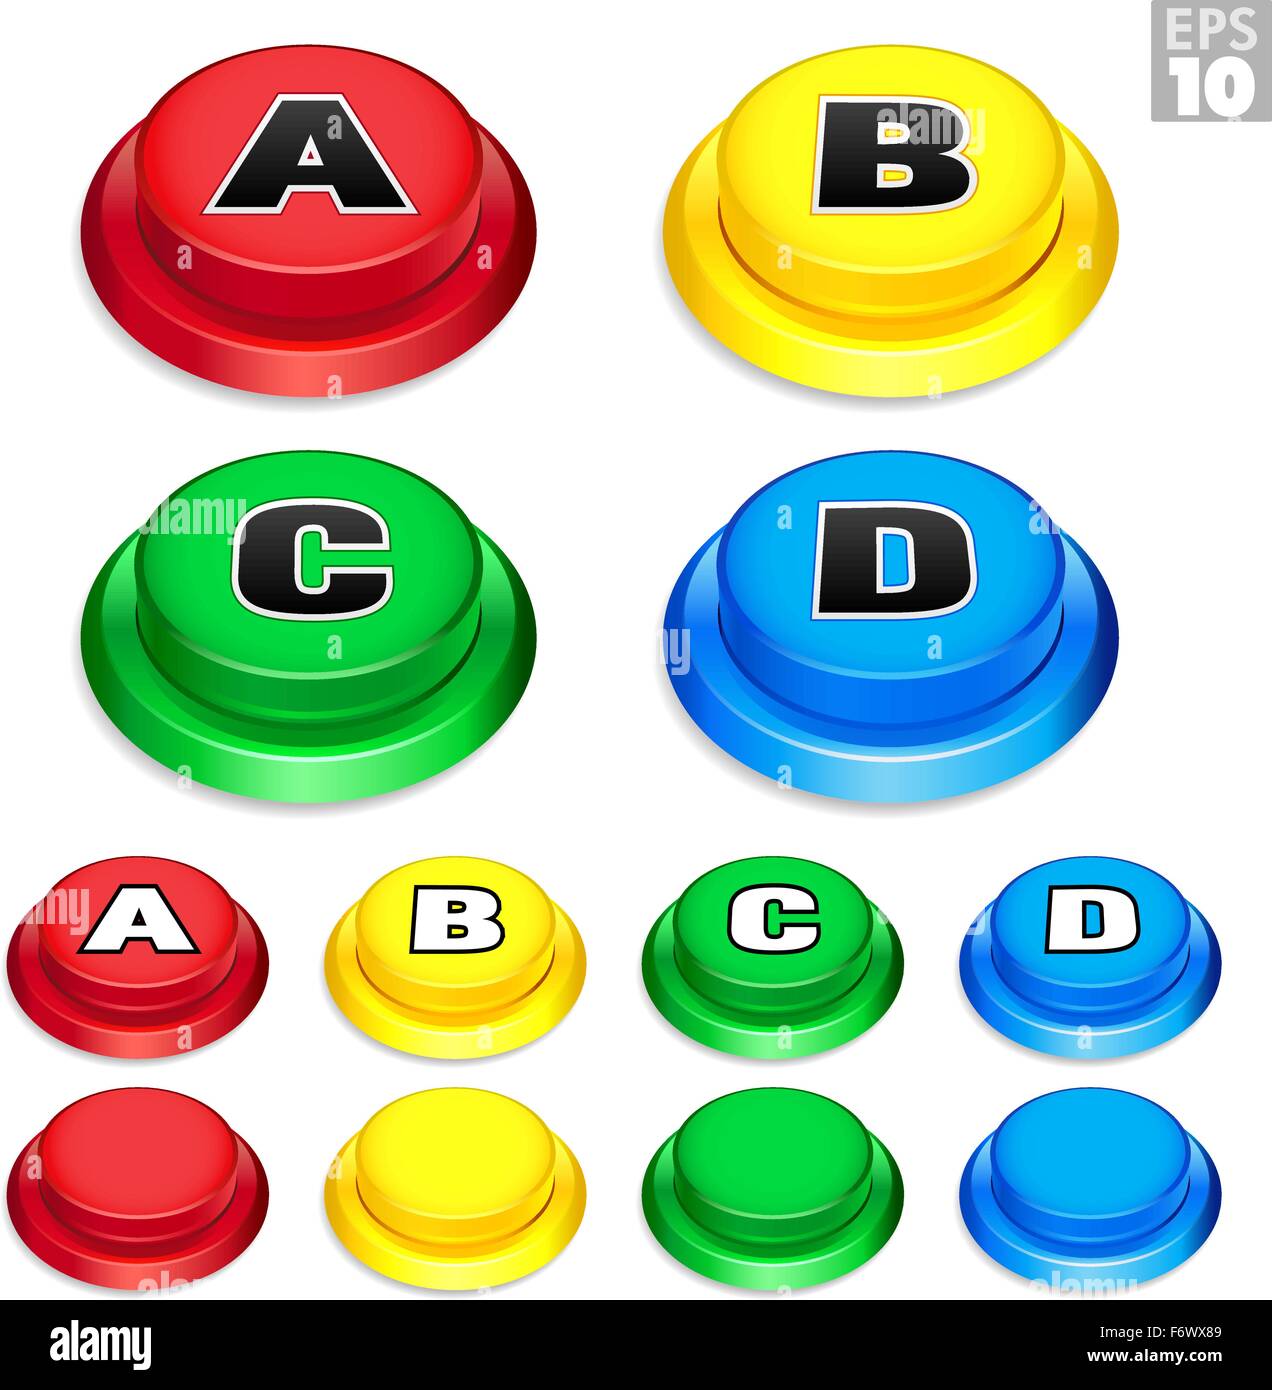 Arcade Tastende Drucktasten in Rot, Gelb, Grün und Blau Farben für Retro Spiele. Stock Vektor